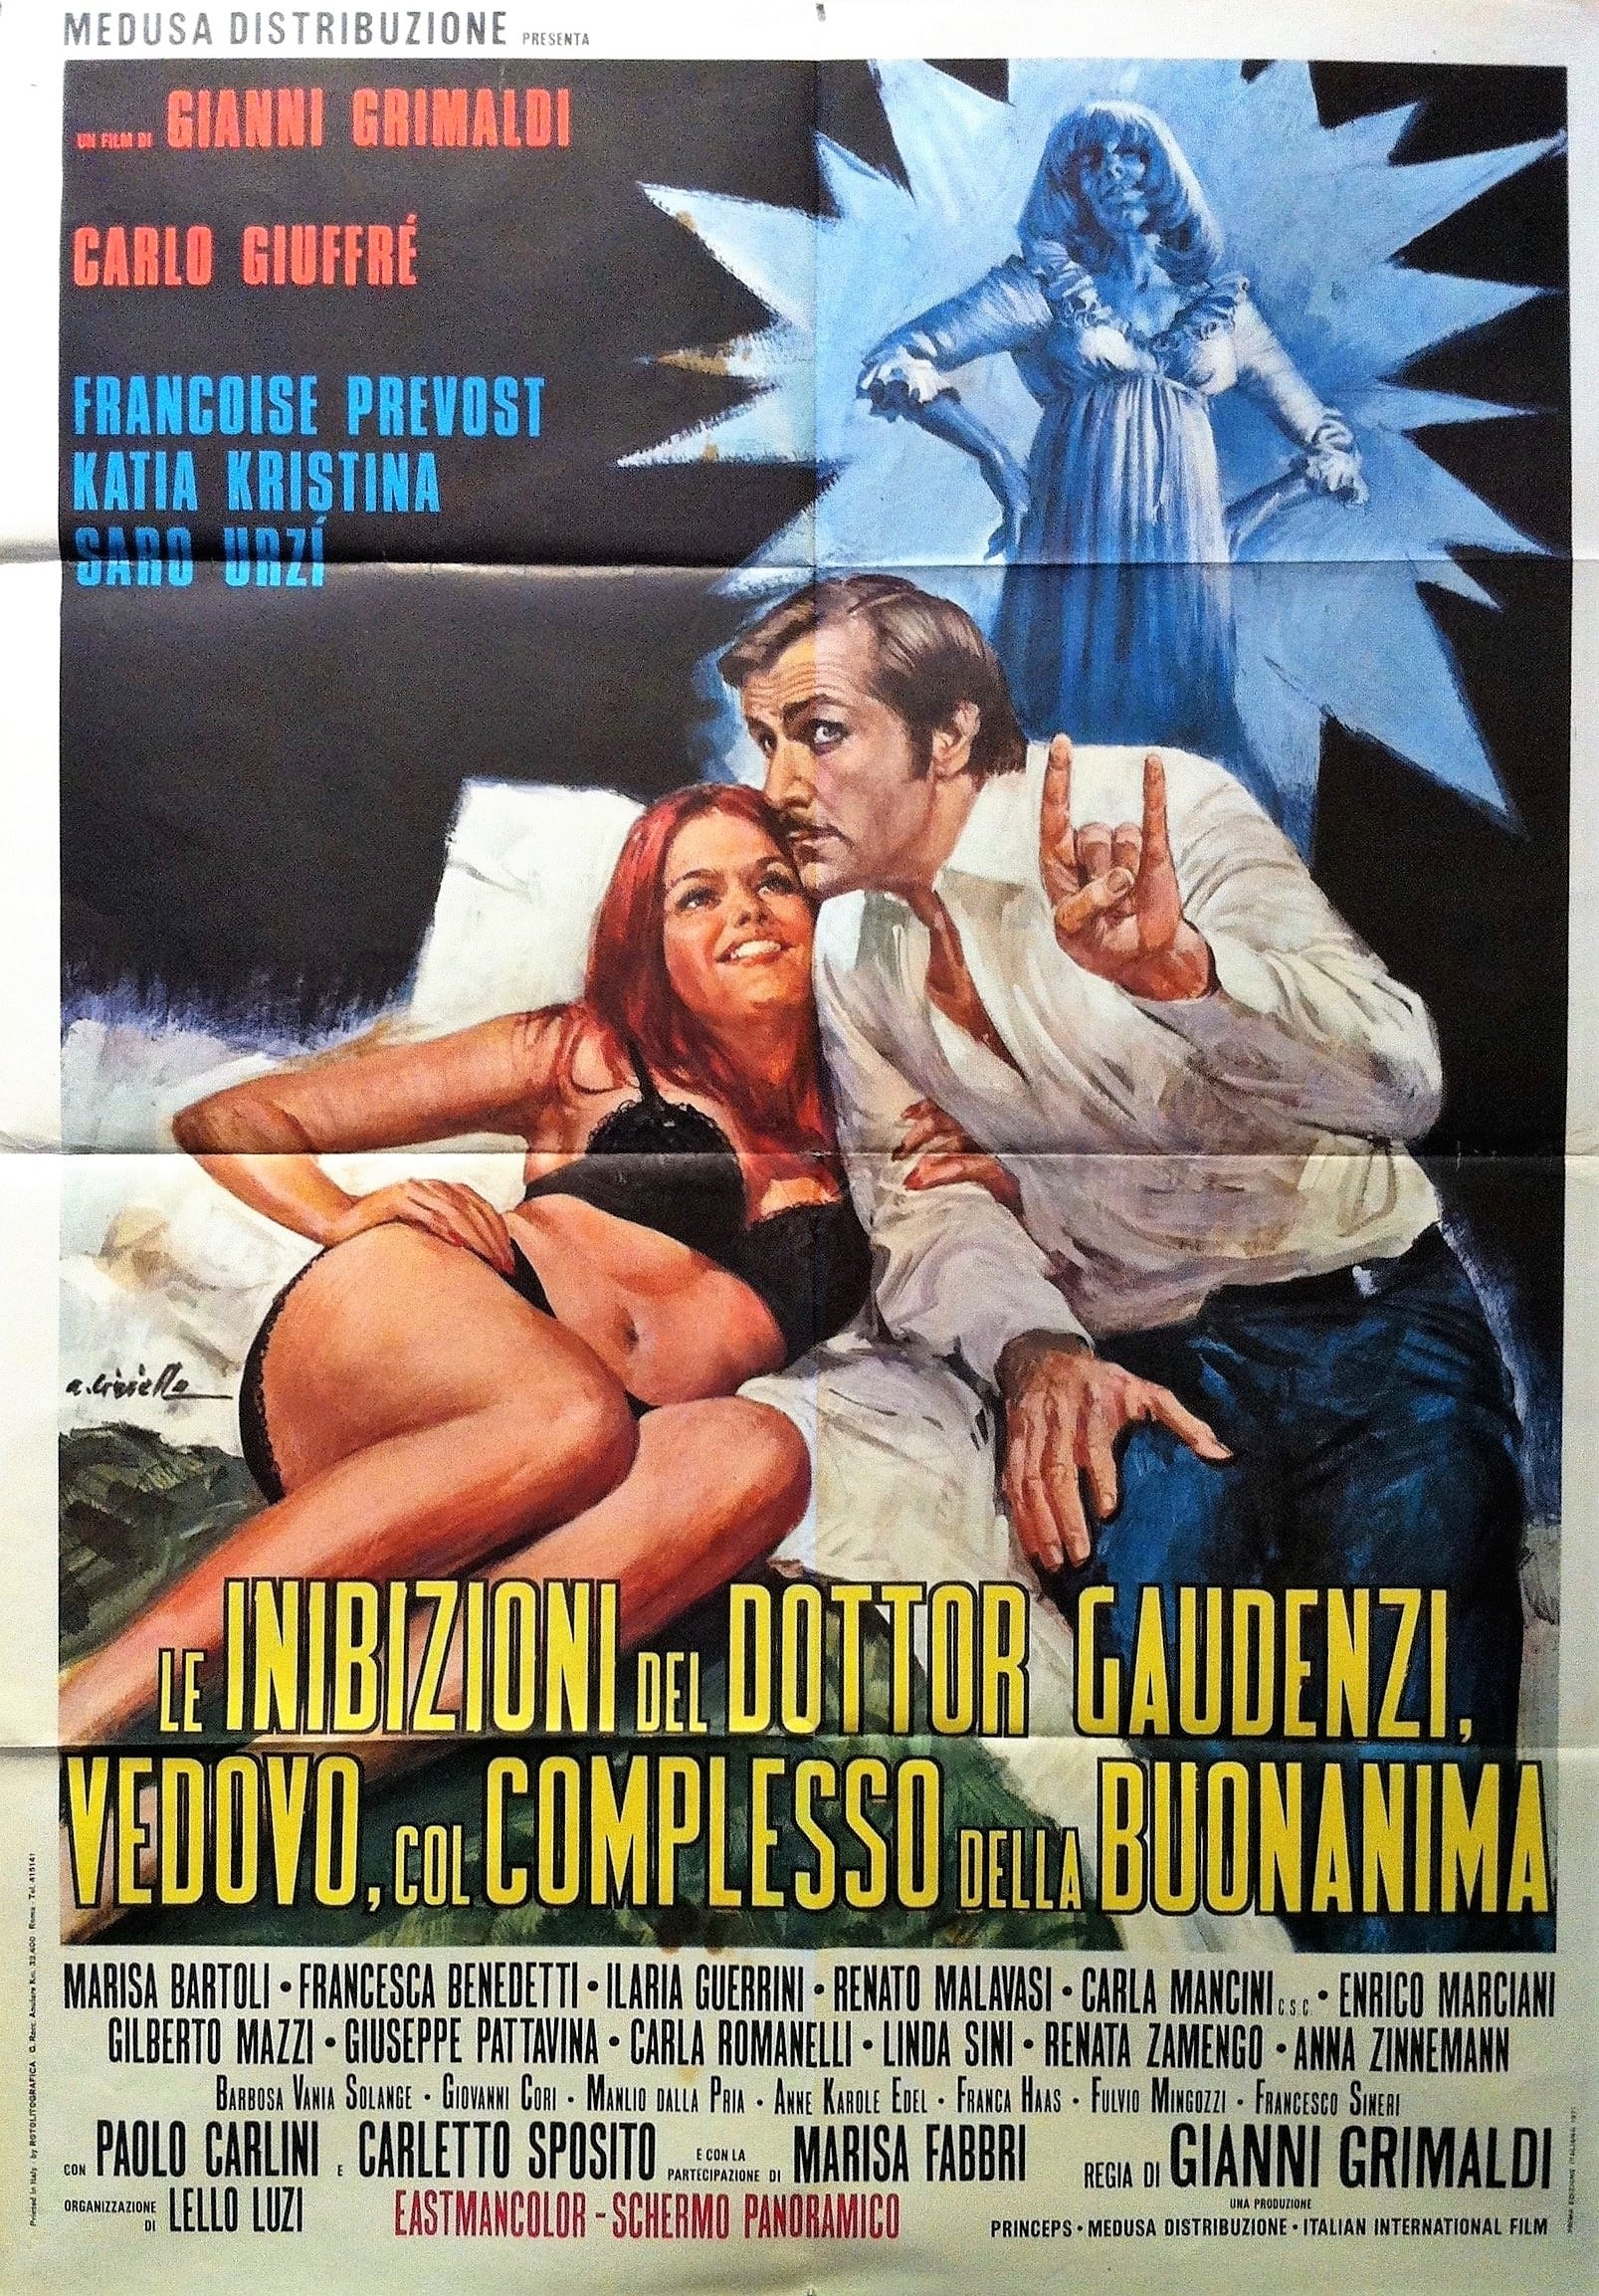 Le inibizioni del dottor Gaudenzi, vedovo col complesso della buonanima (1971)